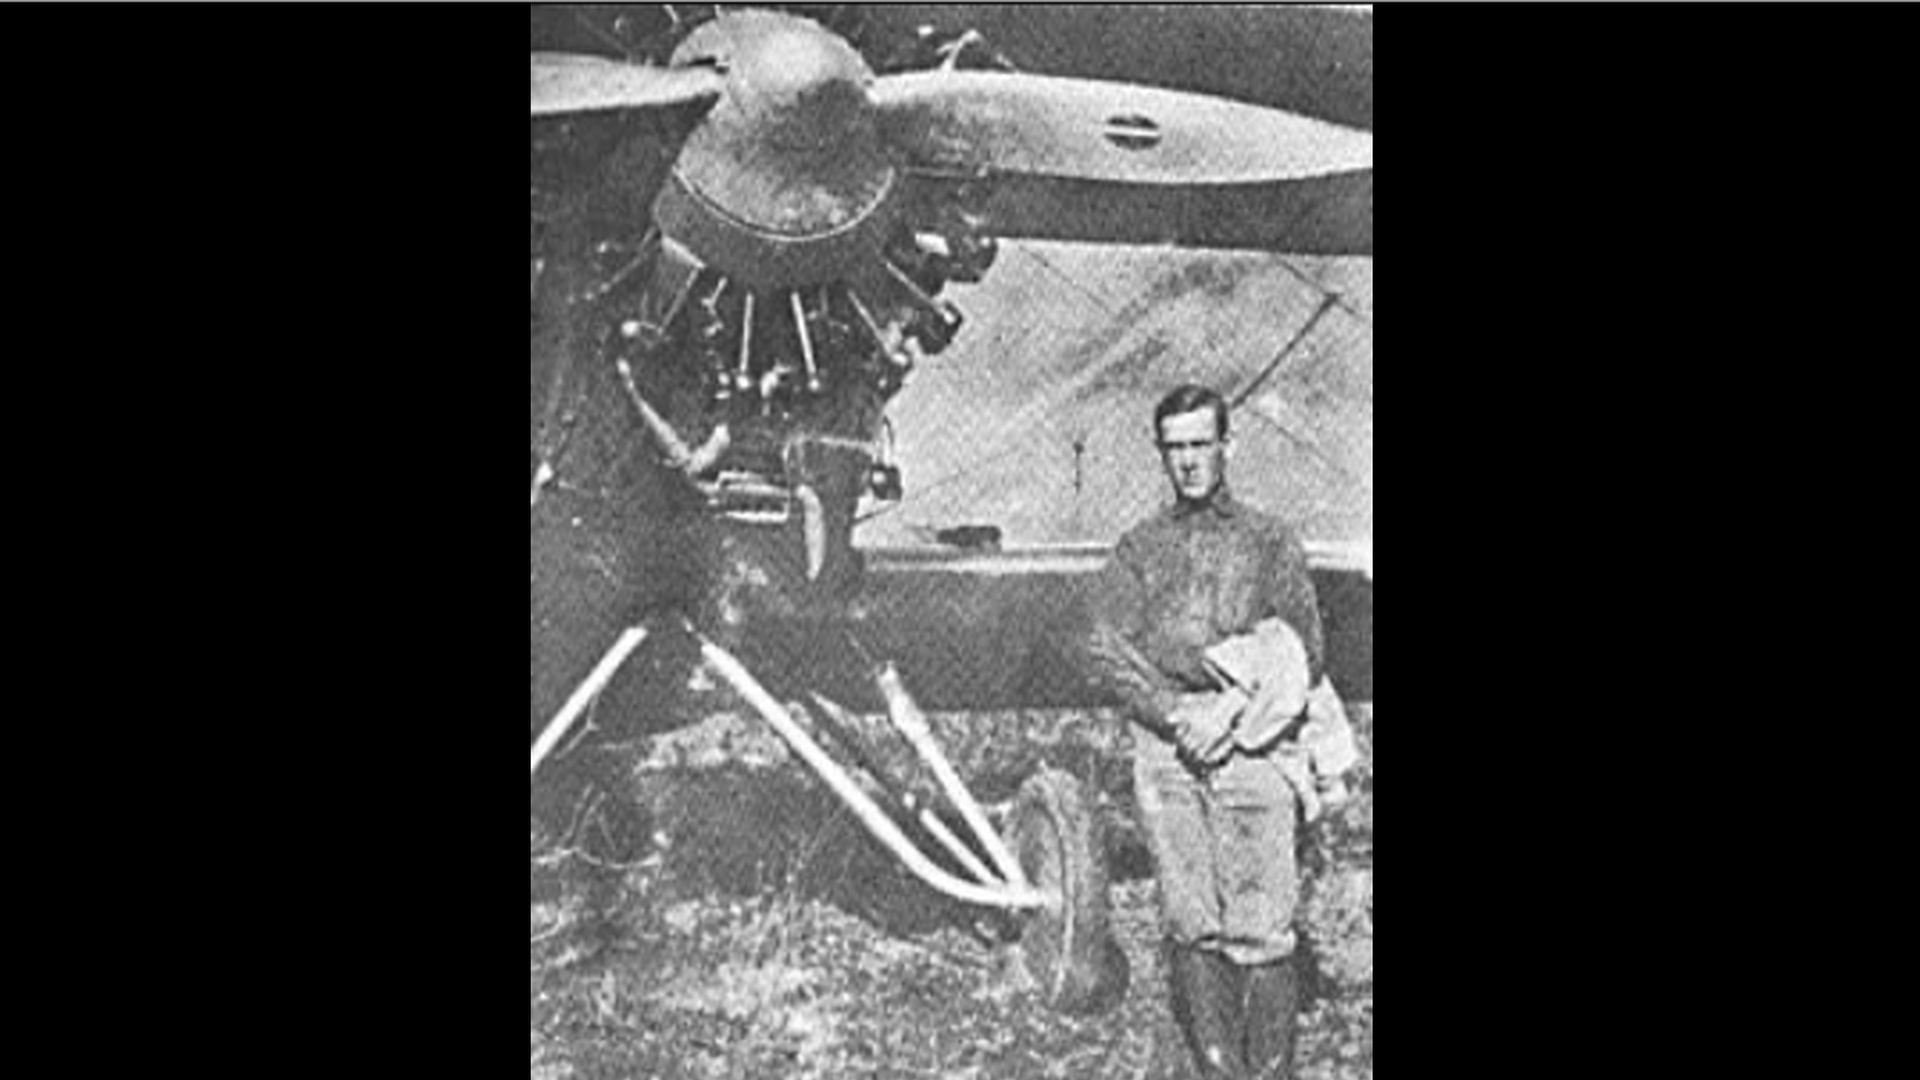 Leonardo Alvariño, pionero de la aviación y valiente en la guerra contra Colombia, es un ejemplo de heroísmo olvidado. (Archivo histórico de Marina)